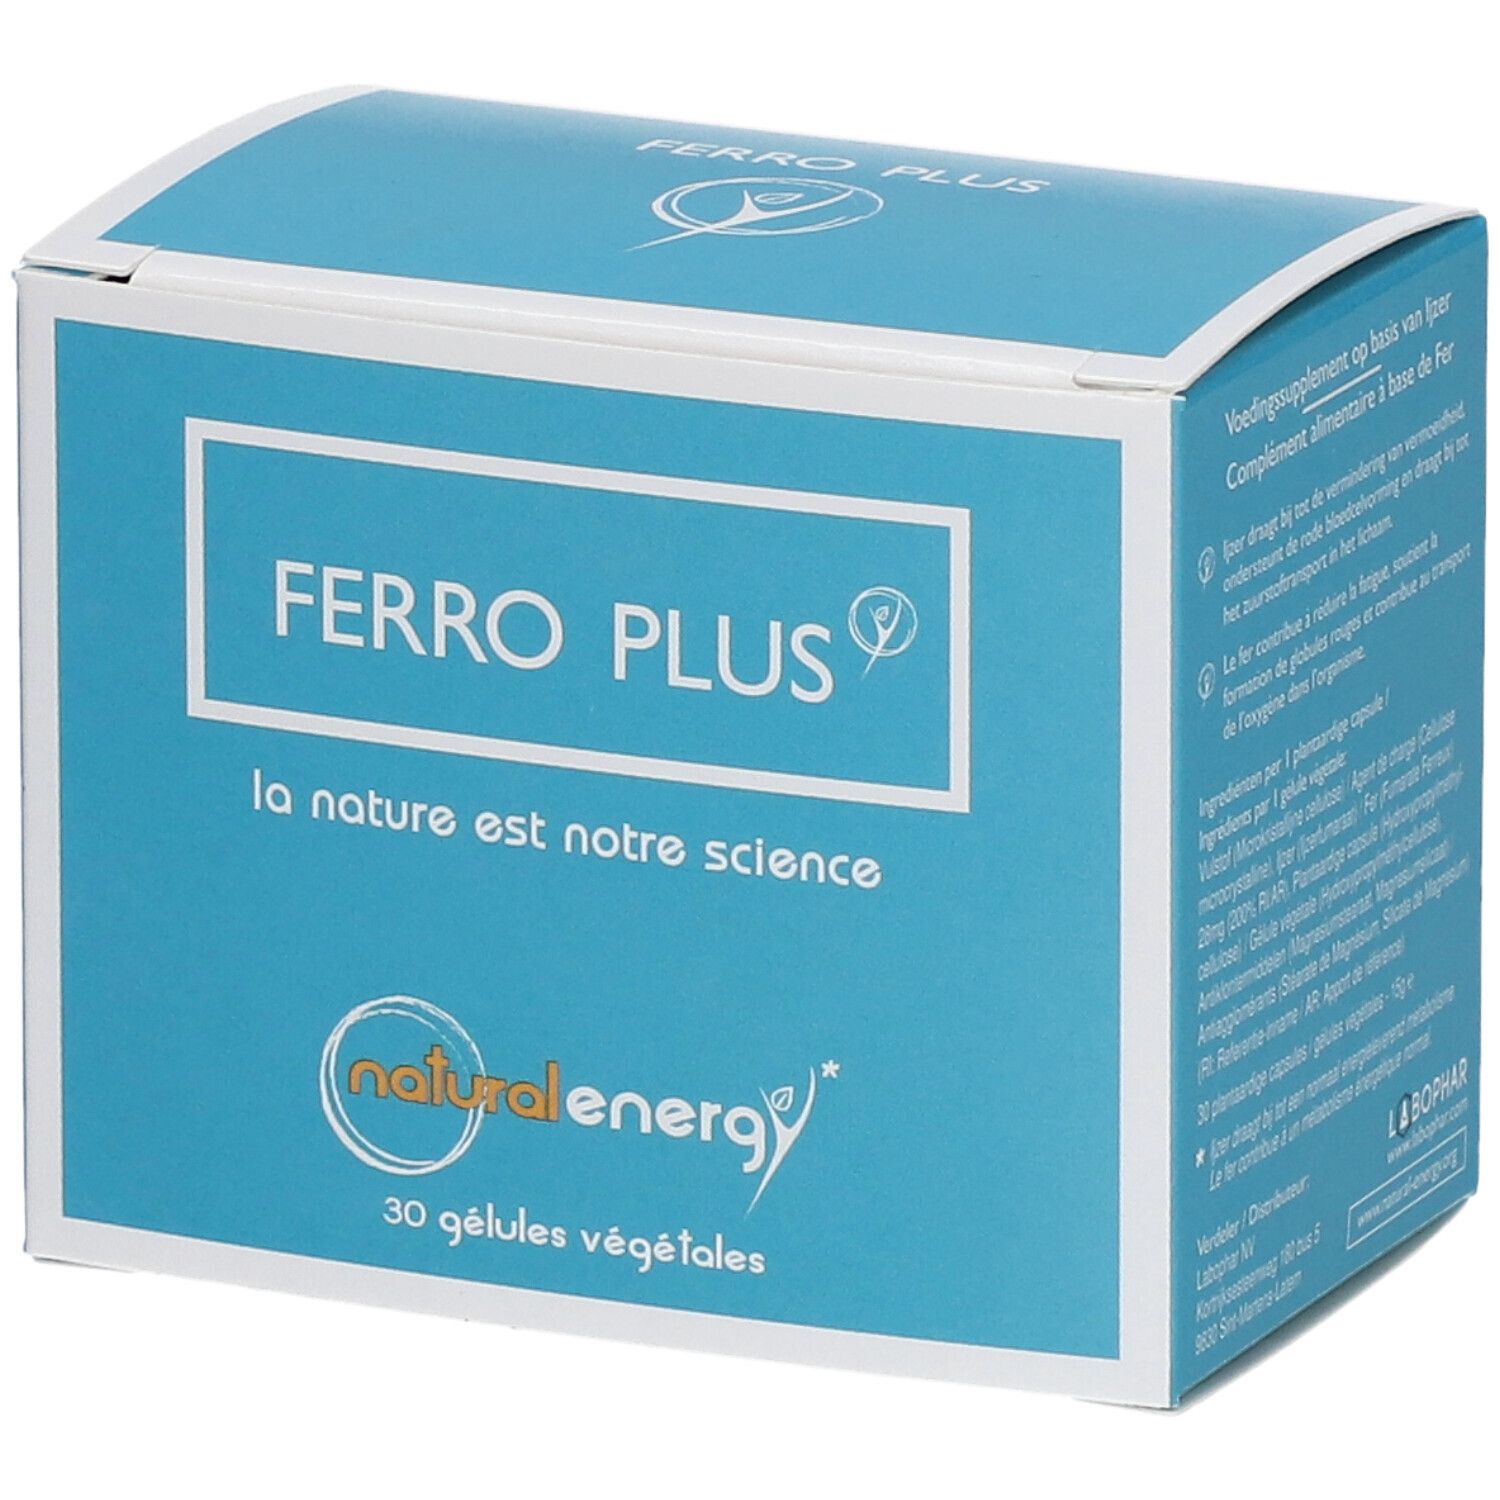 Natural Energy Ferro Plus